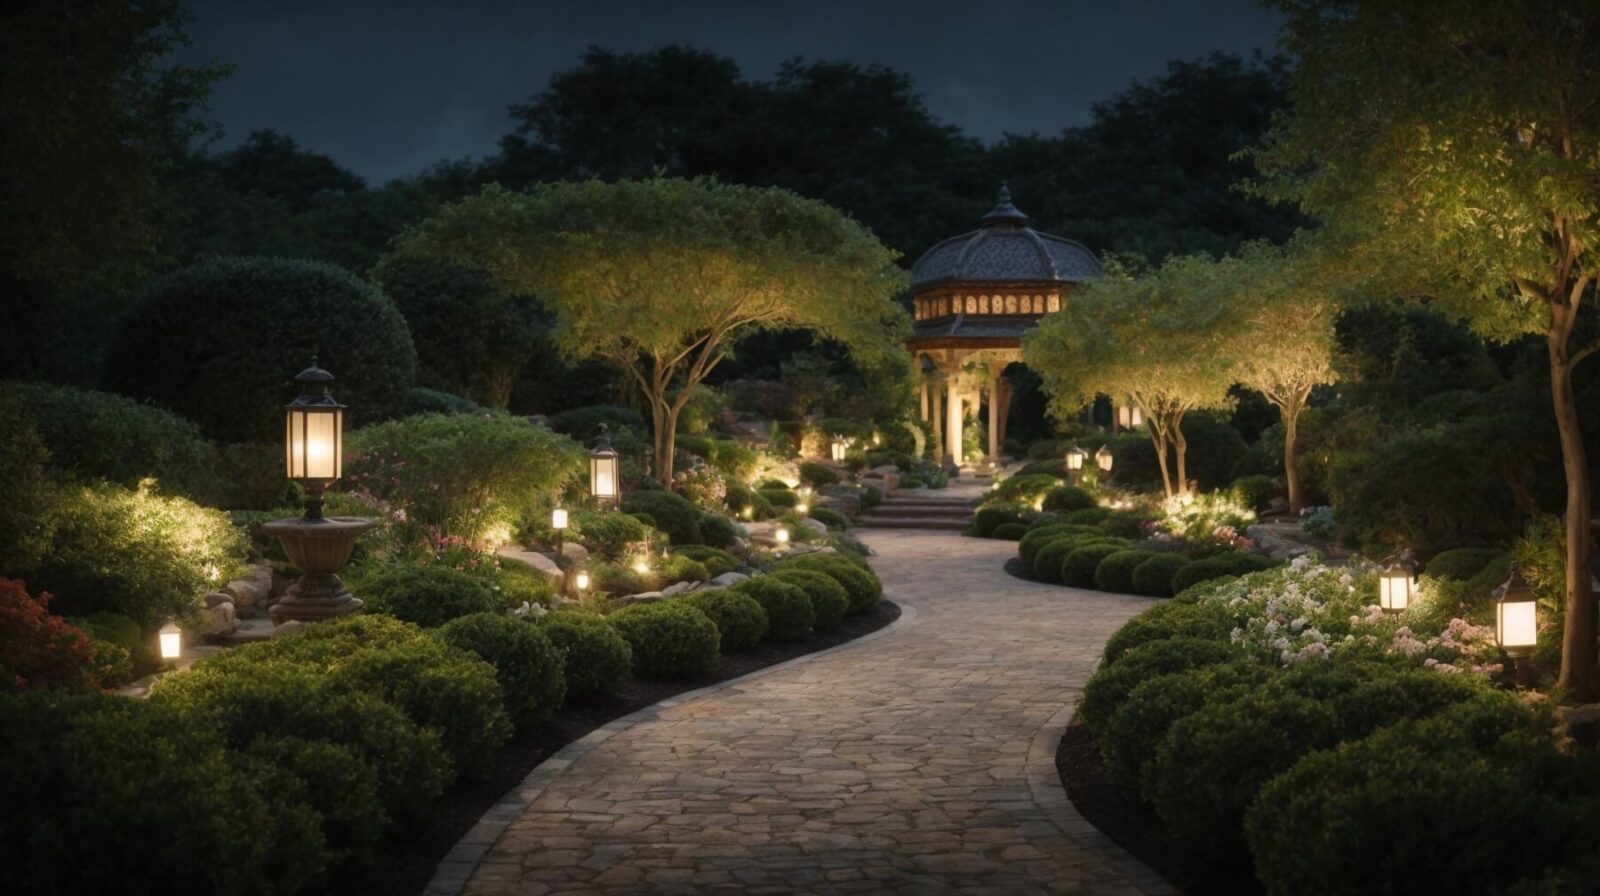 Caminho de jardim à noite, iluminado por diversas lanternas decorativas para área externa, realçando a beleza natural e criando um ambiente sereno.